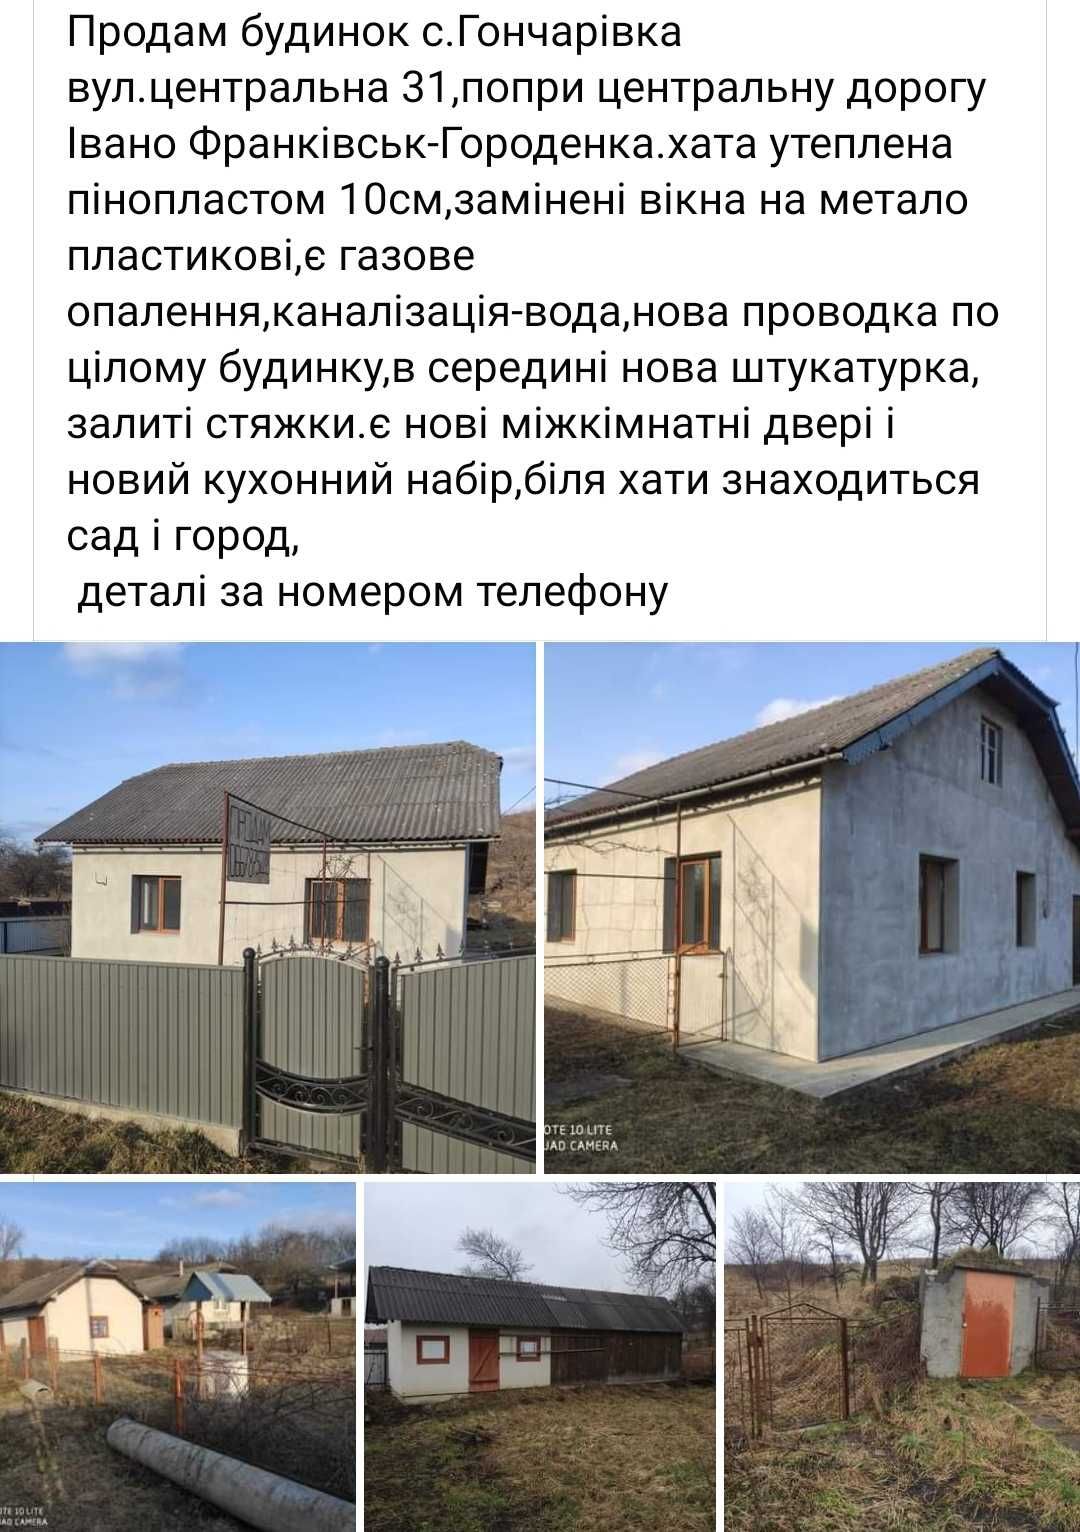 Продам будинок с.Гончарівка, Тлумацький район.